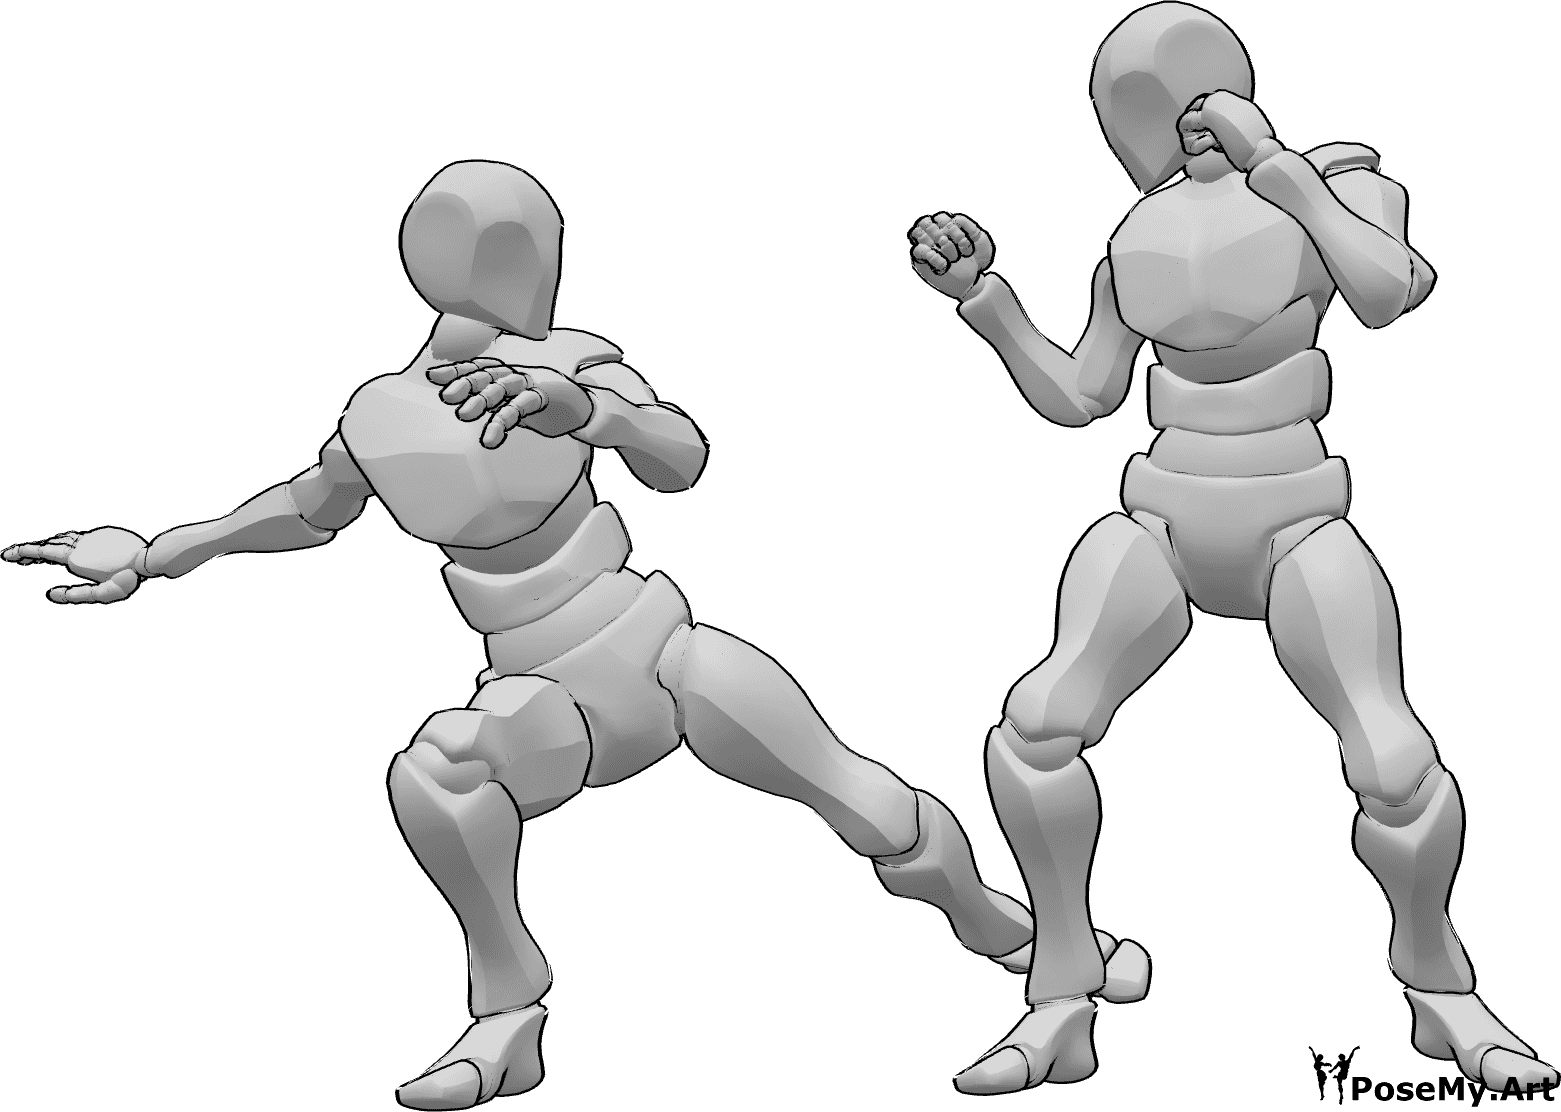 Riferimento alle pose- Posa d'attacco maschile con calci - Maschio attacca l'altro maschio, calciando la gamba destra, riferimento alla posa di attacco maschile